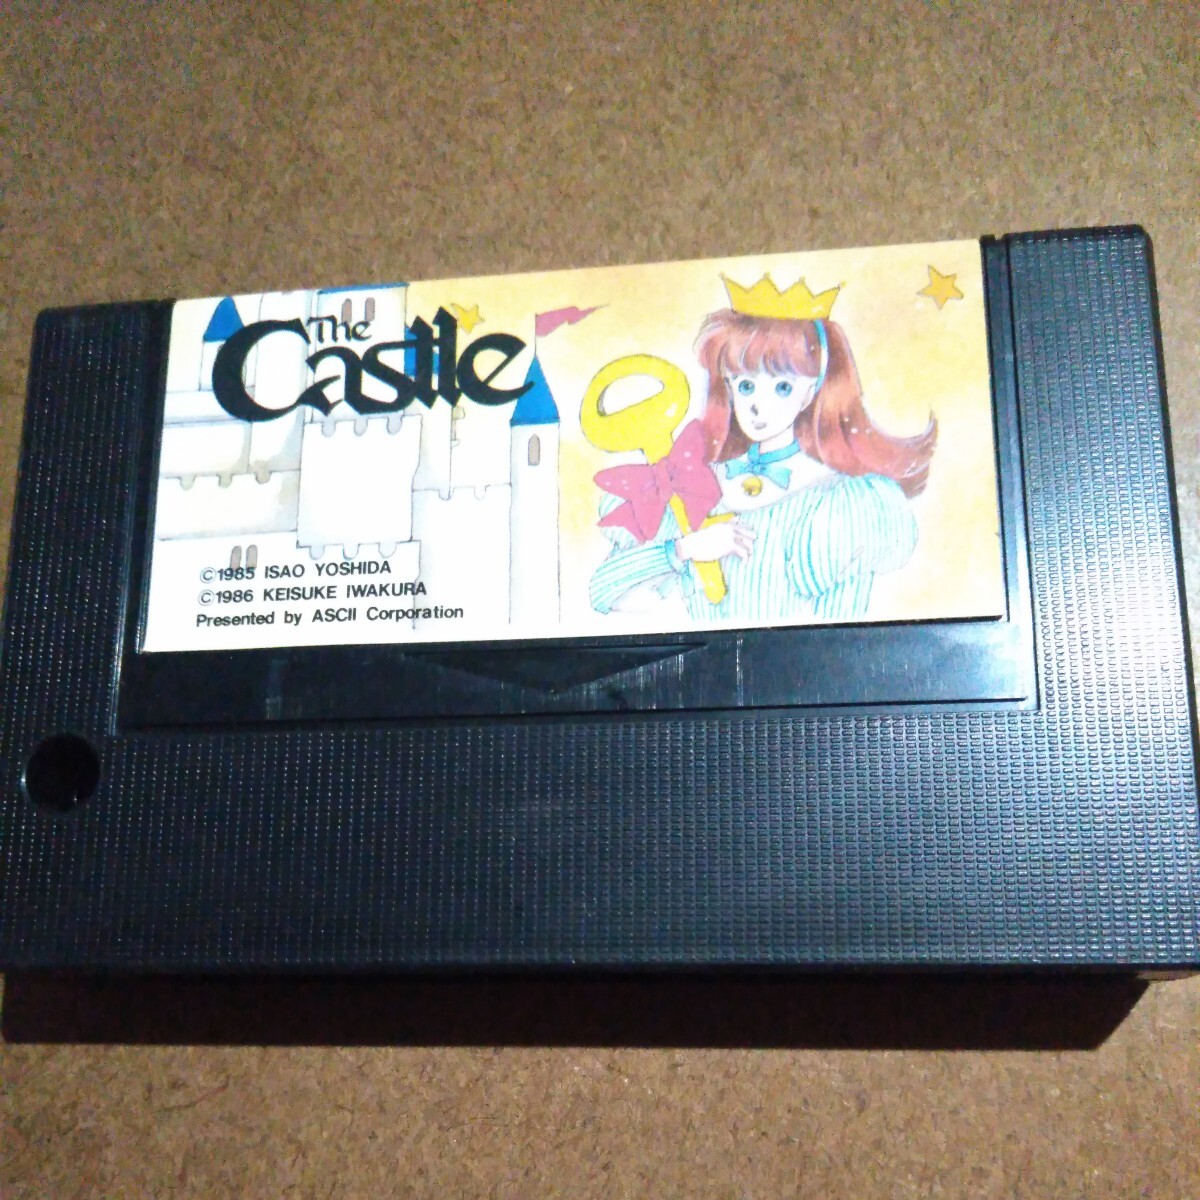 MSX*The Castle soft 